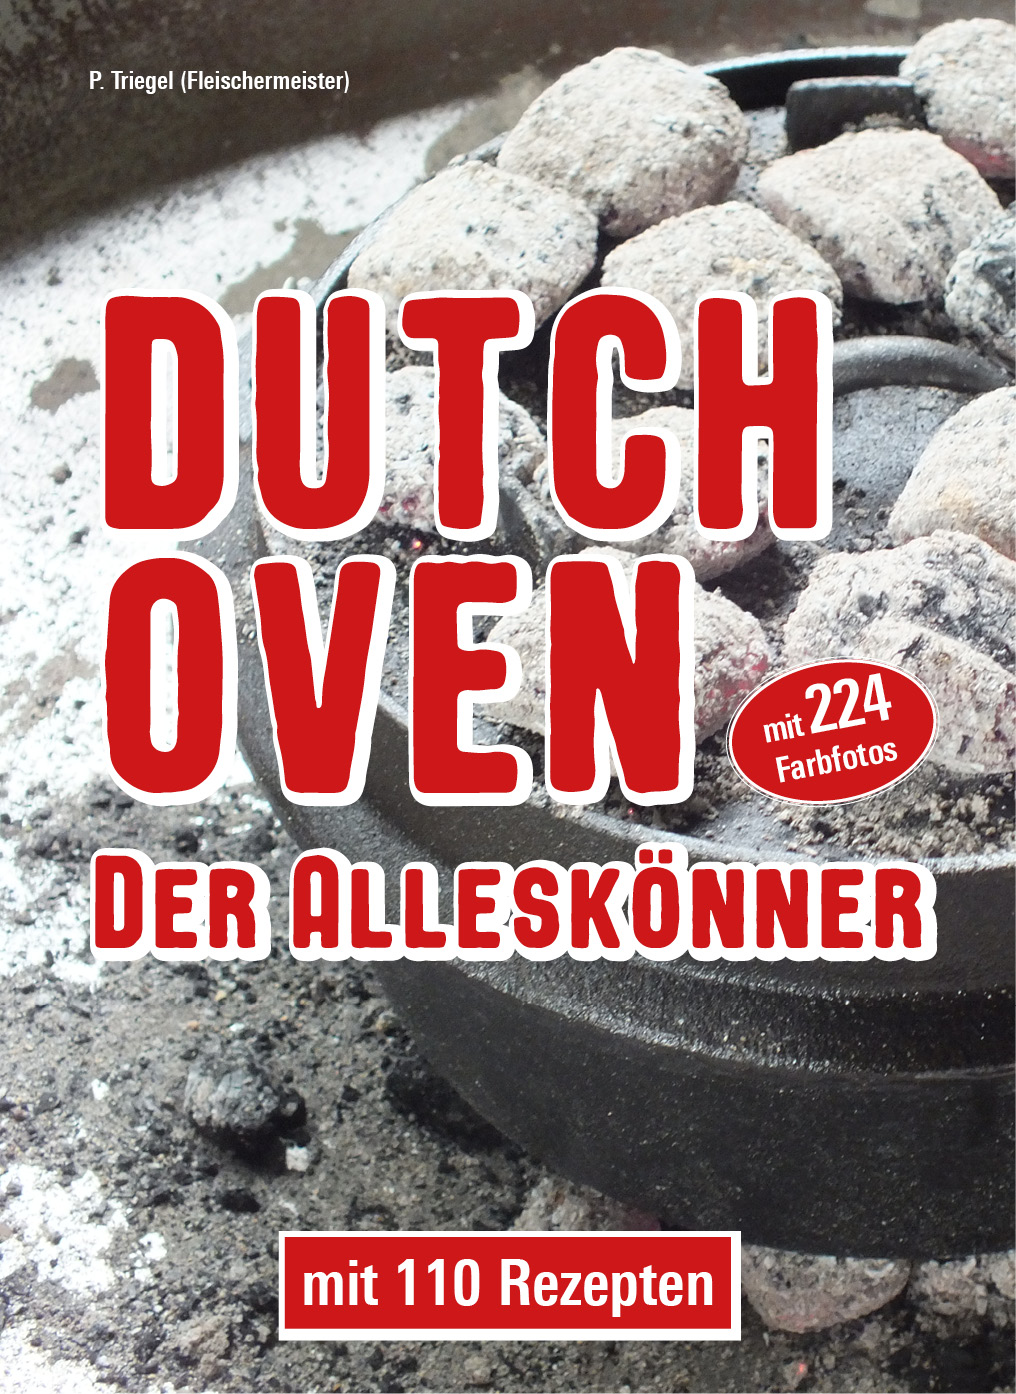 Dutch Oven Der Alleskönner mit 110 Rezepten